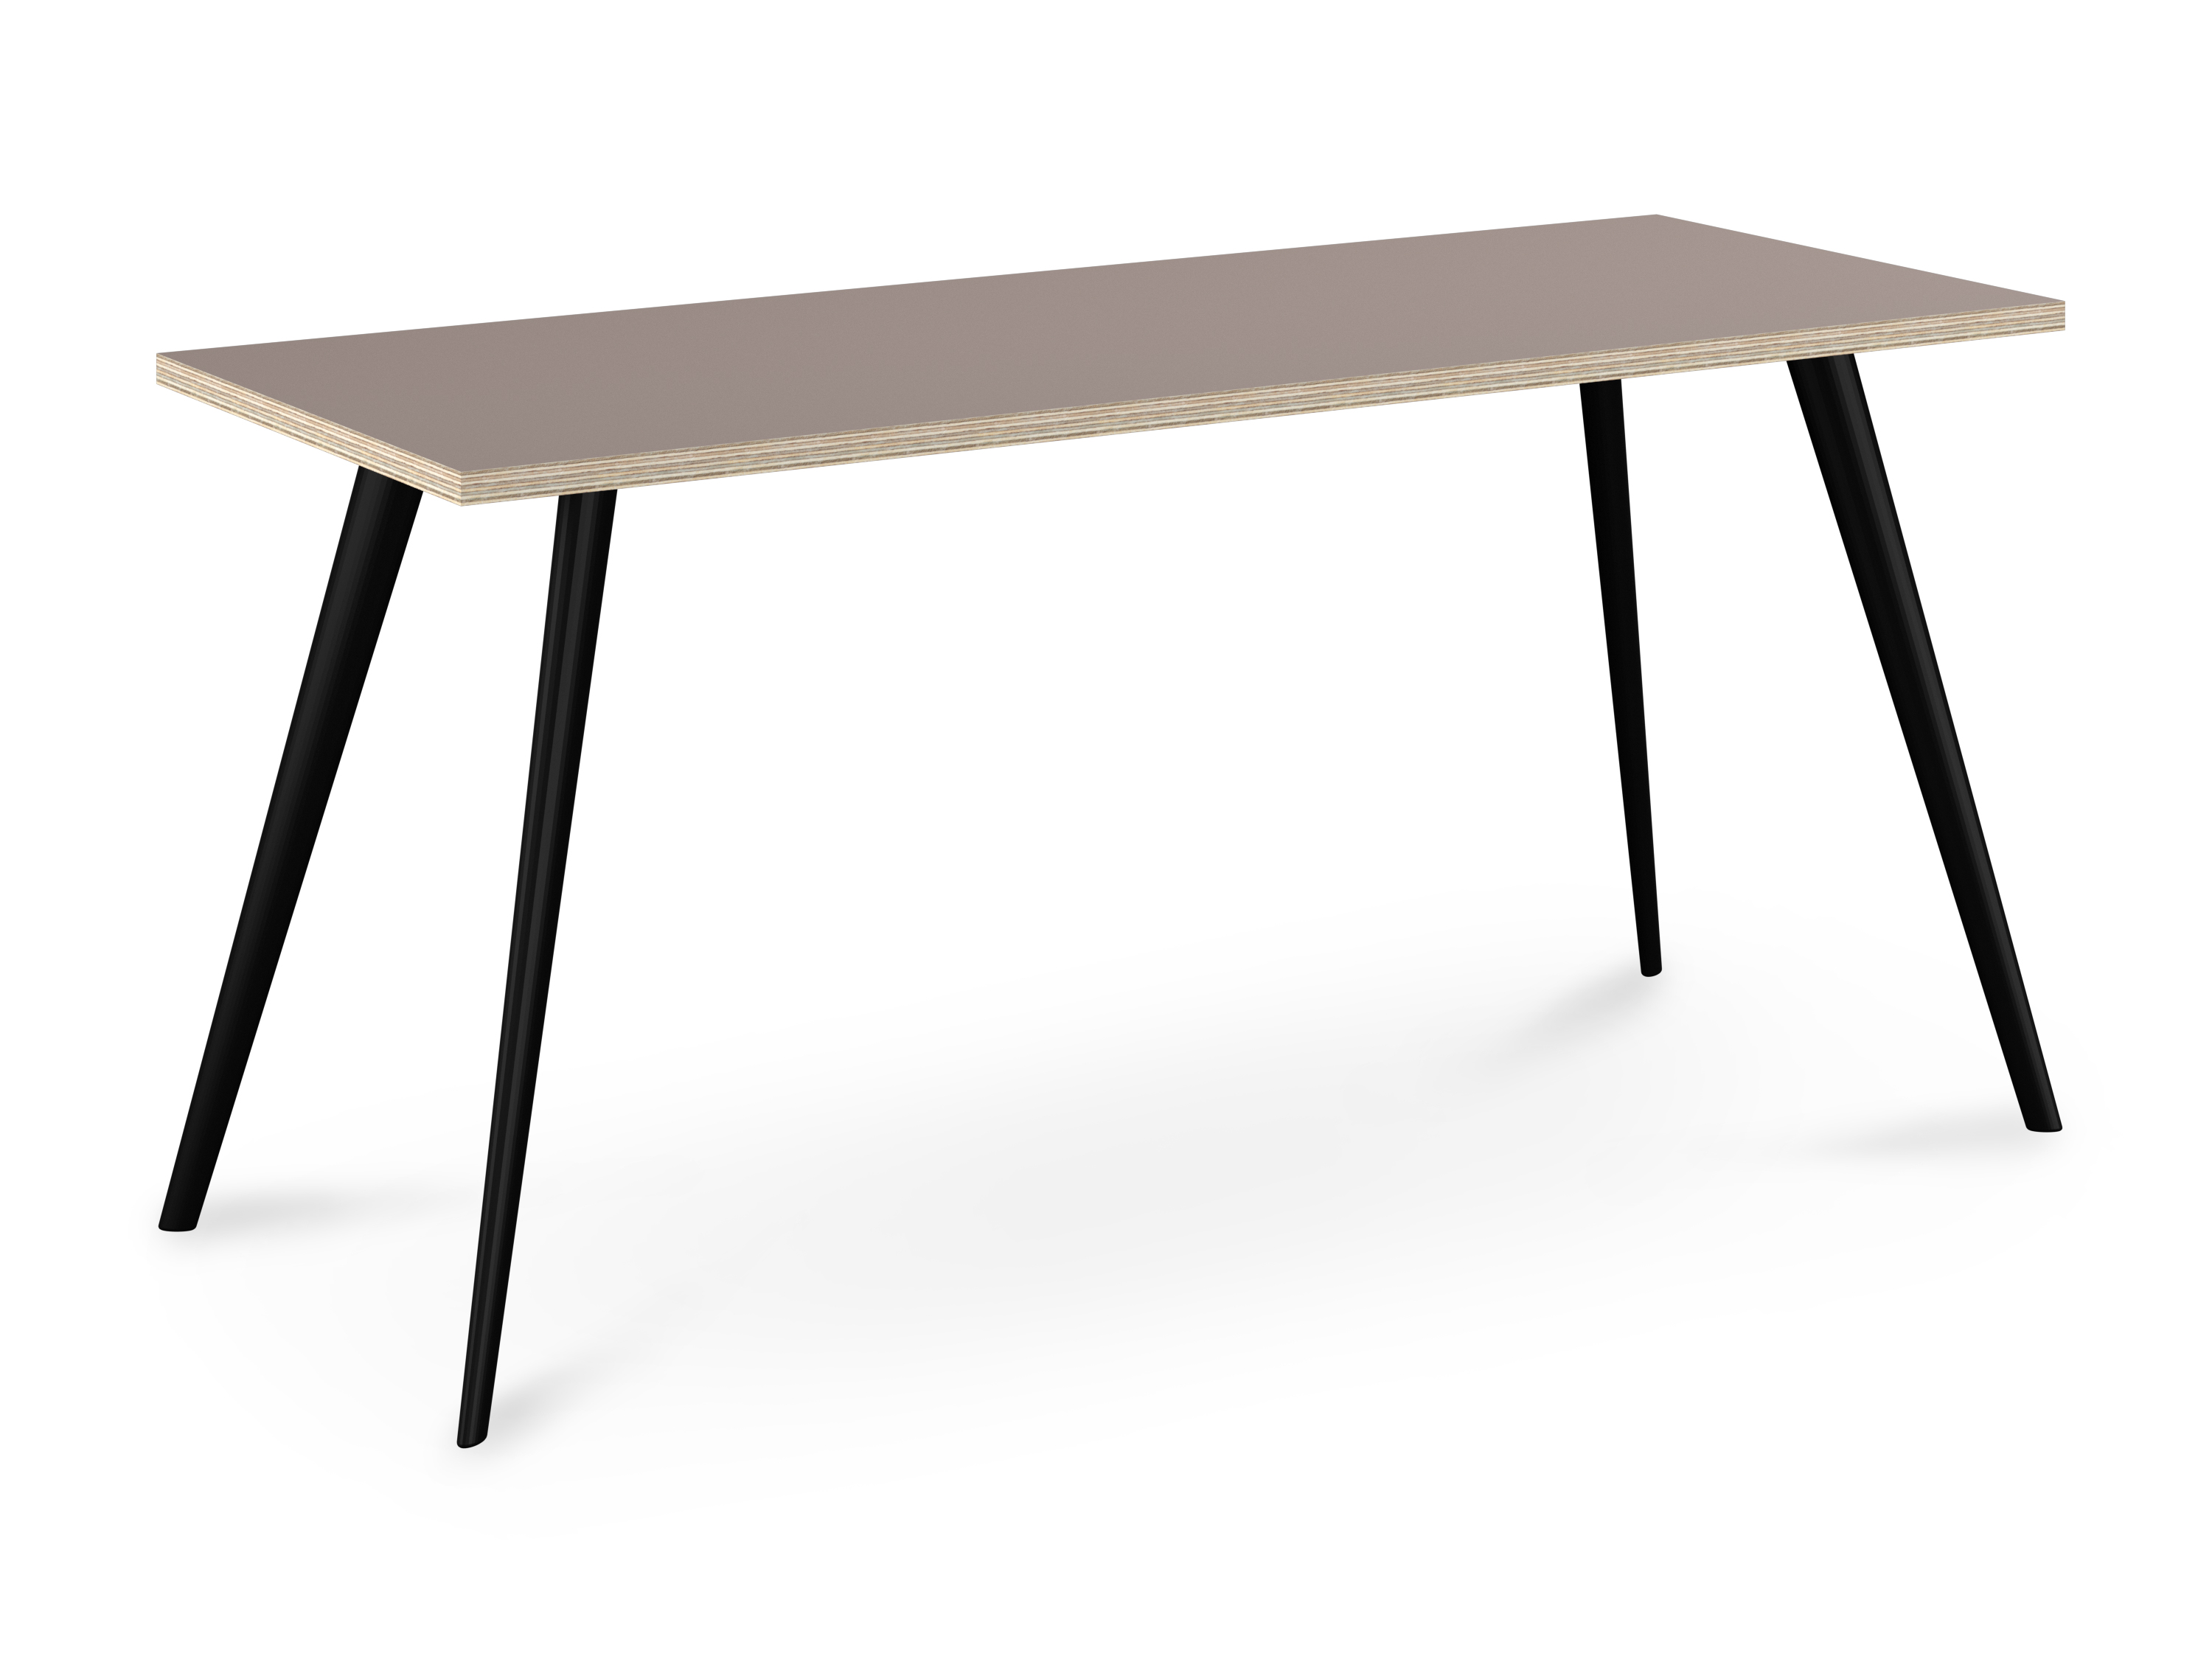 WS - Air desk - Black legs, Stone Grey Acrylic Ply